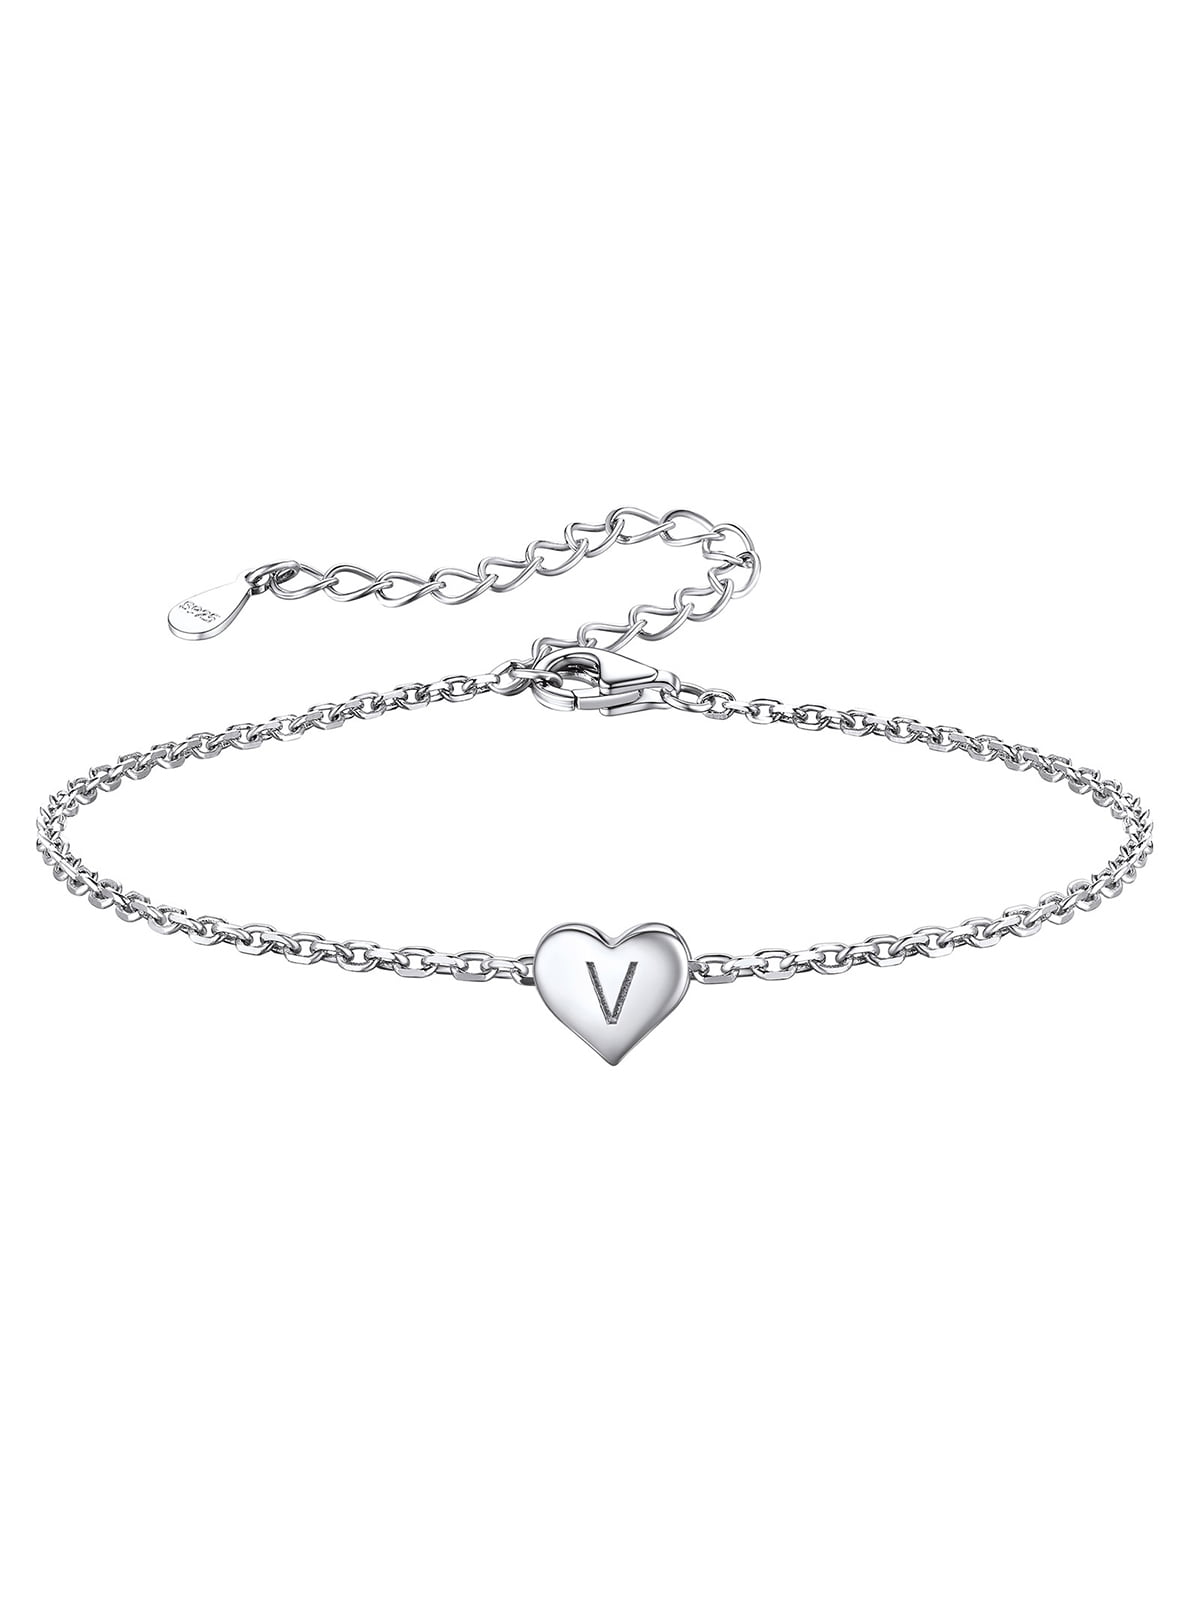 Silvora Elegant Heart Bracelet Women Sterling Silver Initial Letter V